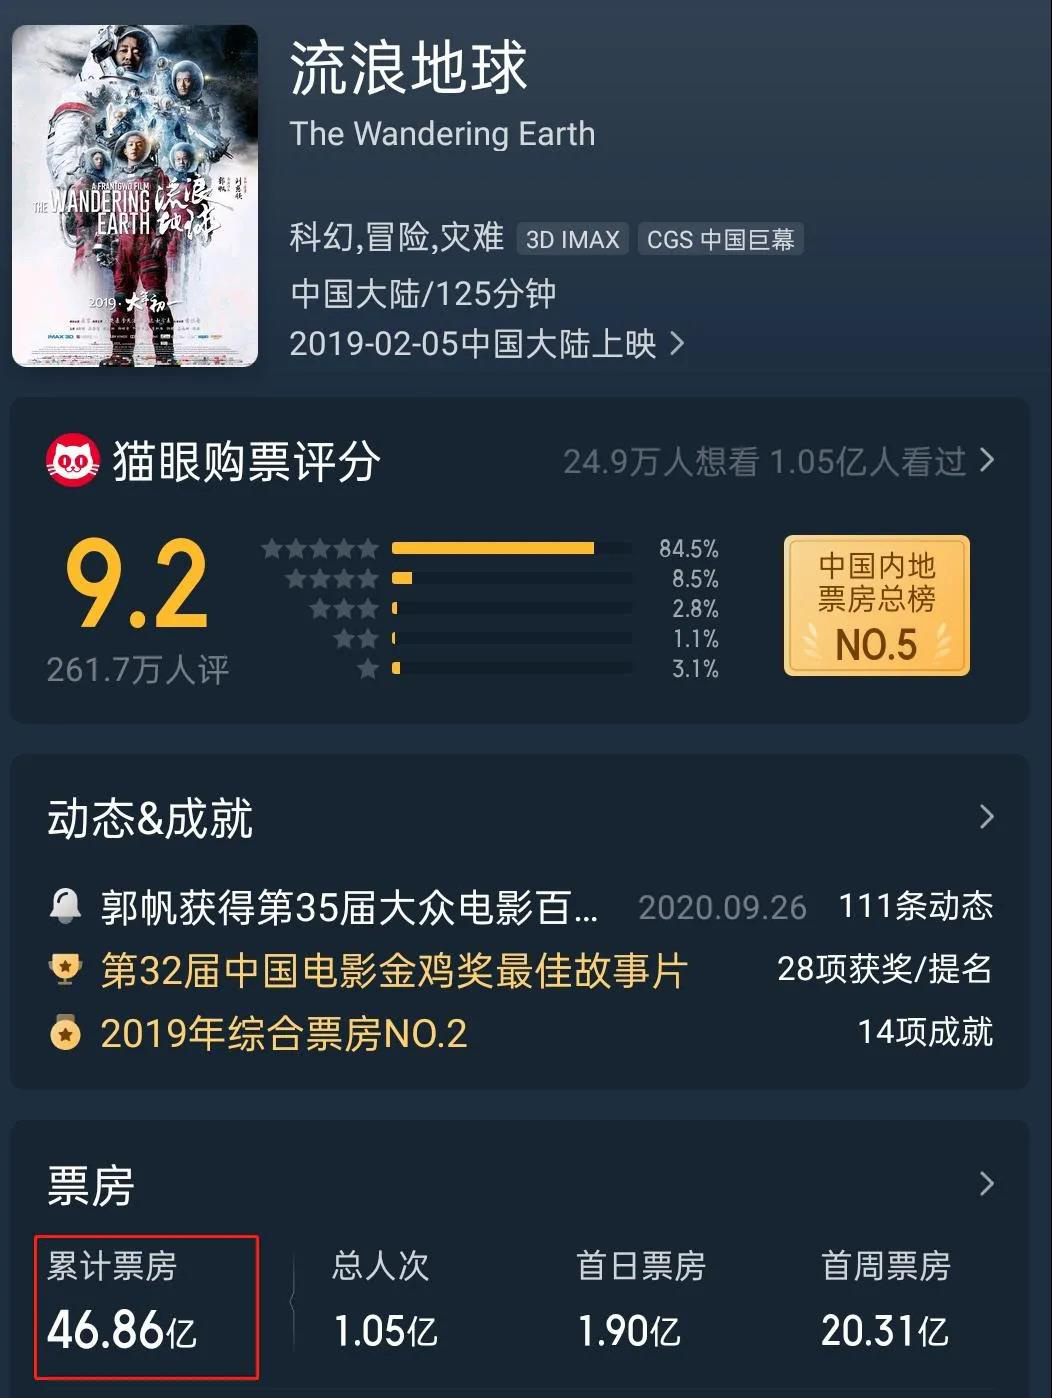 《流浪地球2》开机，中国科幻电影再现高光时刻？